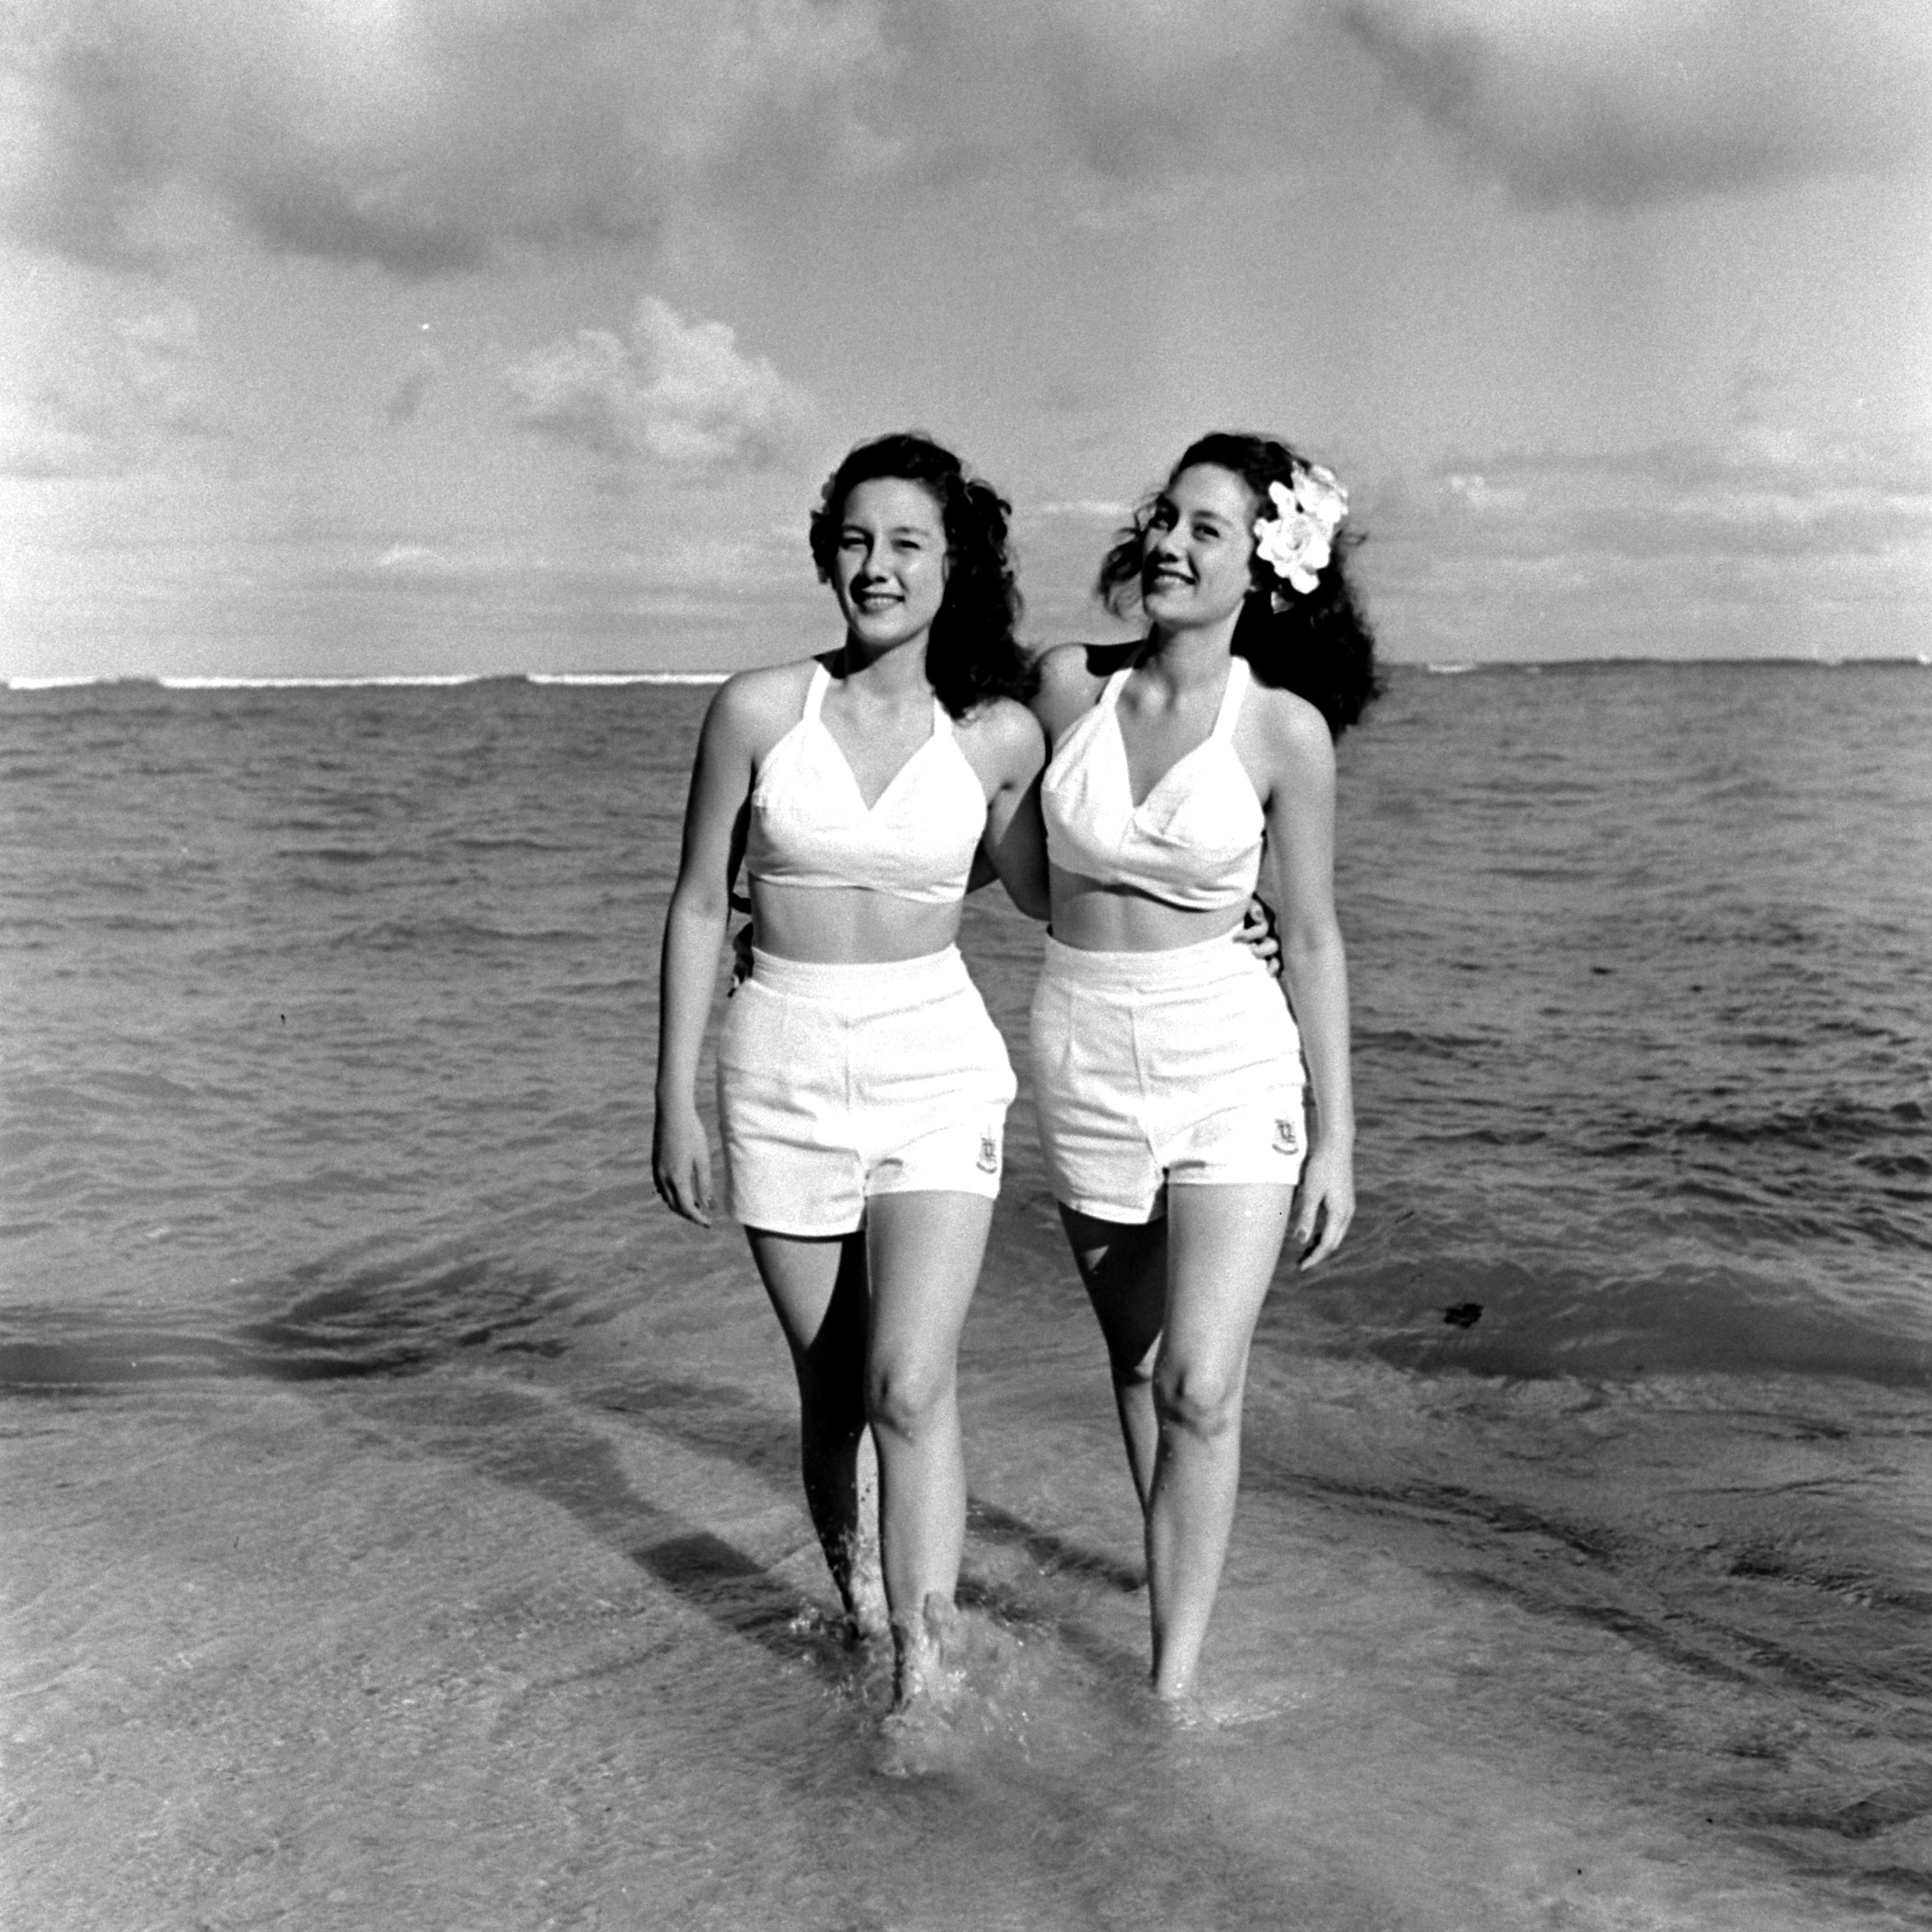 Two Hawaiian girls walking along the shore.